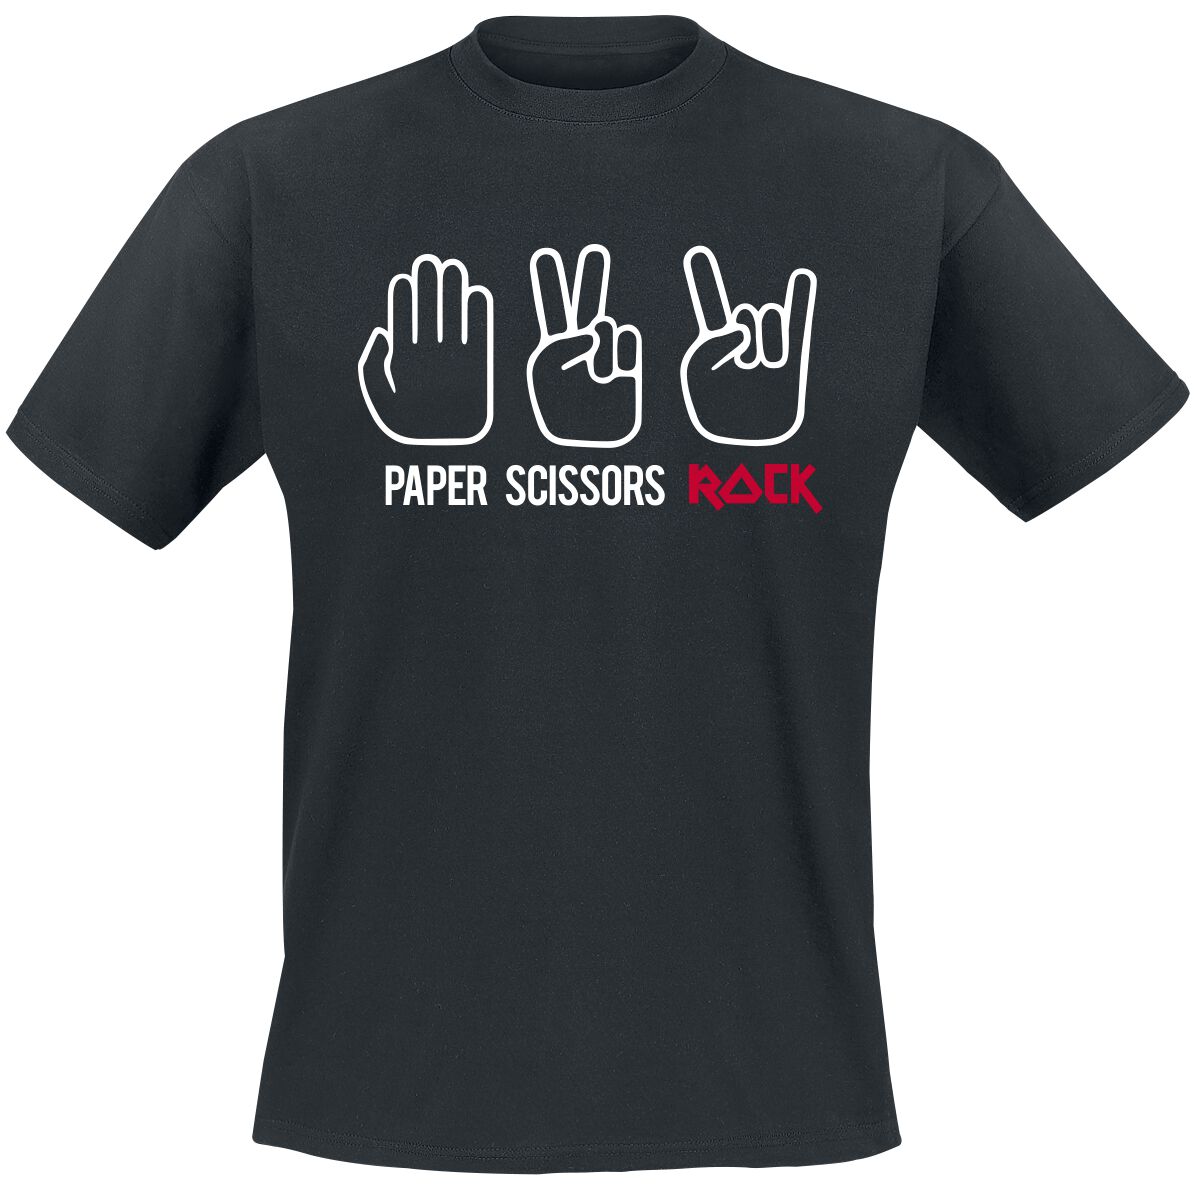 Sprüche T-Shirt - Paper Scissors Rock - S bis 3XL - für Männer - Größe M - schwarz